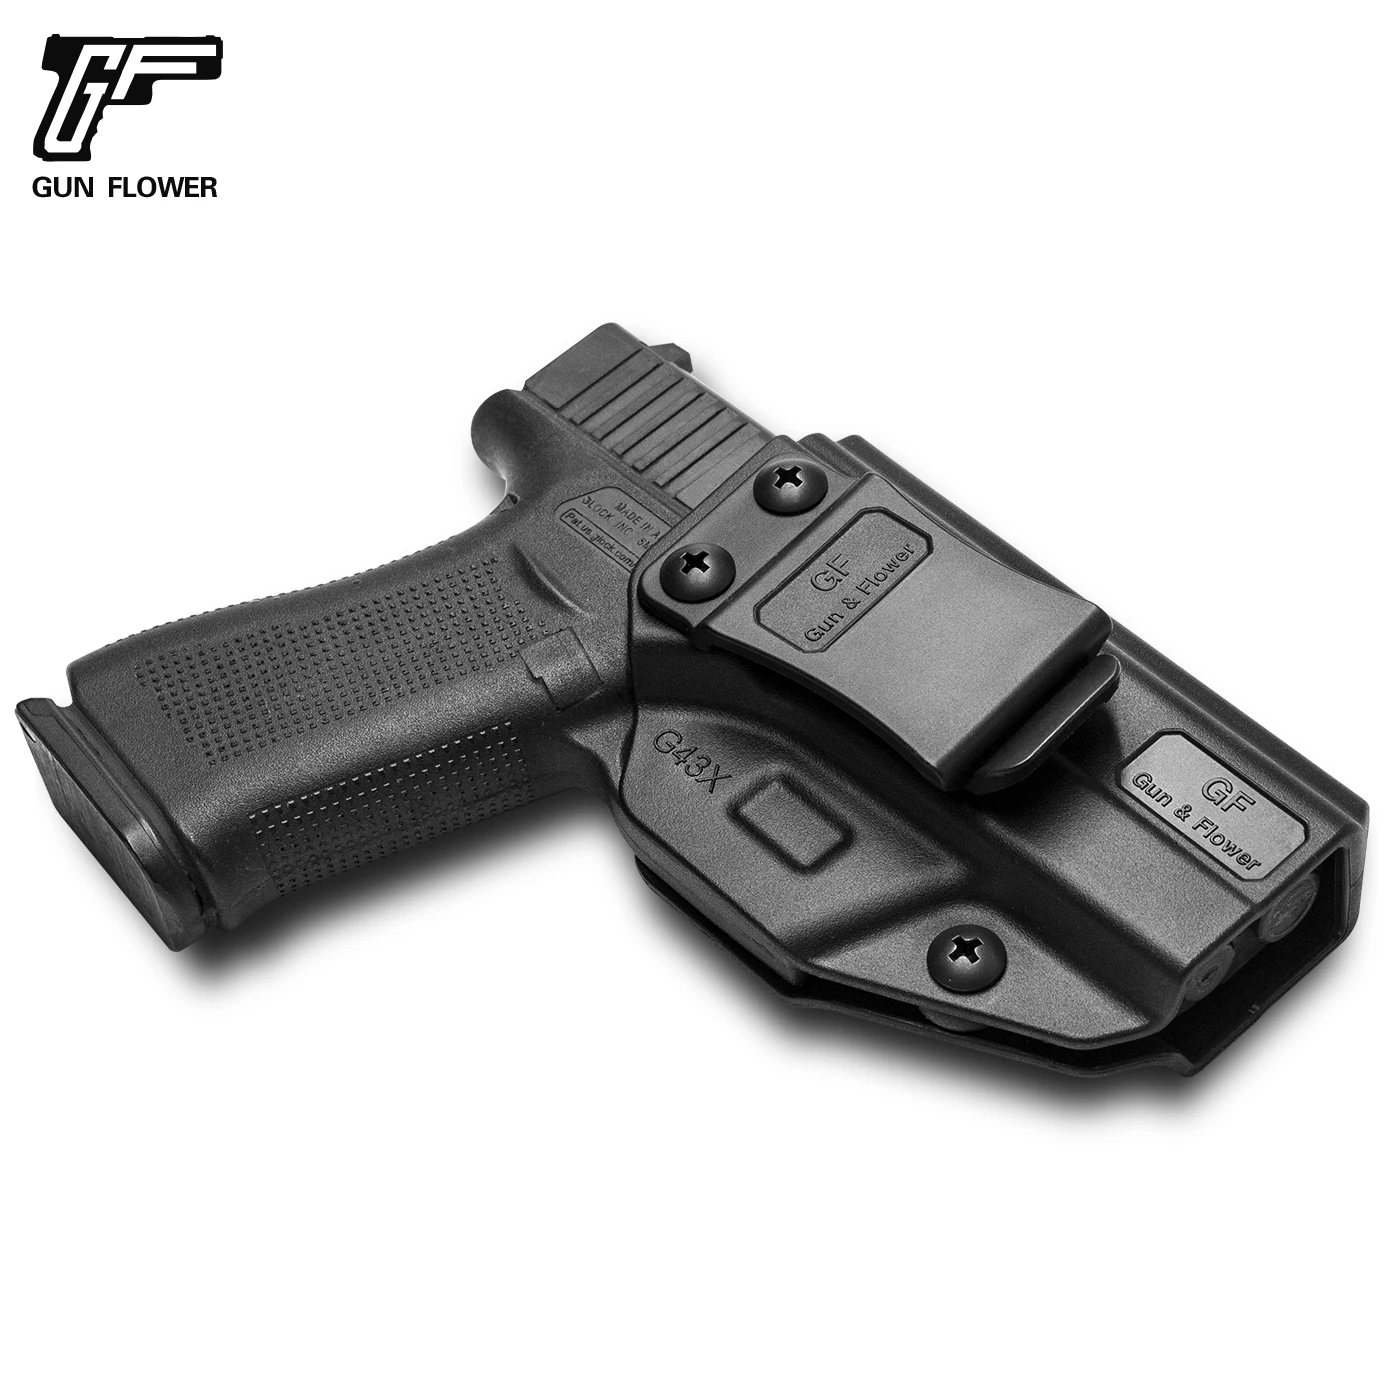 Holster for Glock 43 G43x Polymer Inside Waistband Carry Holster